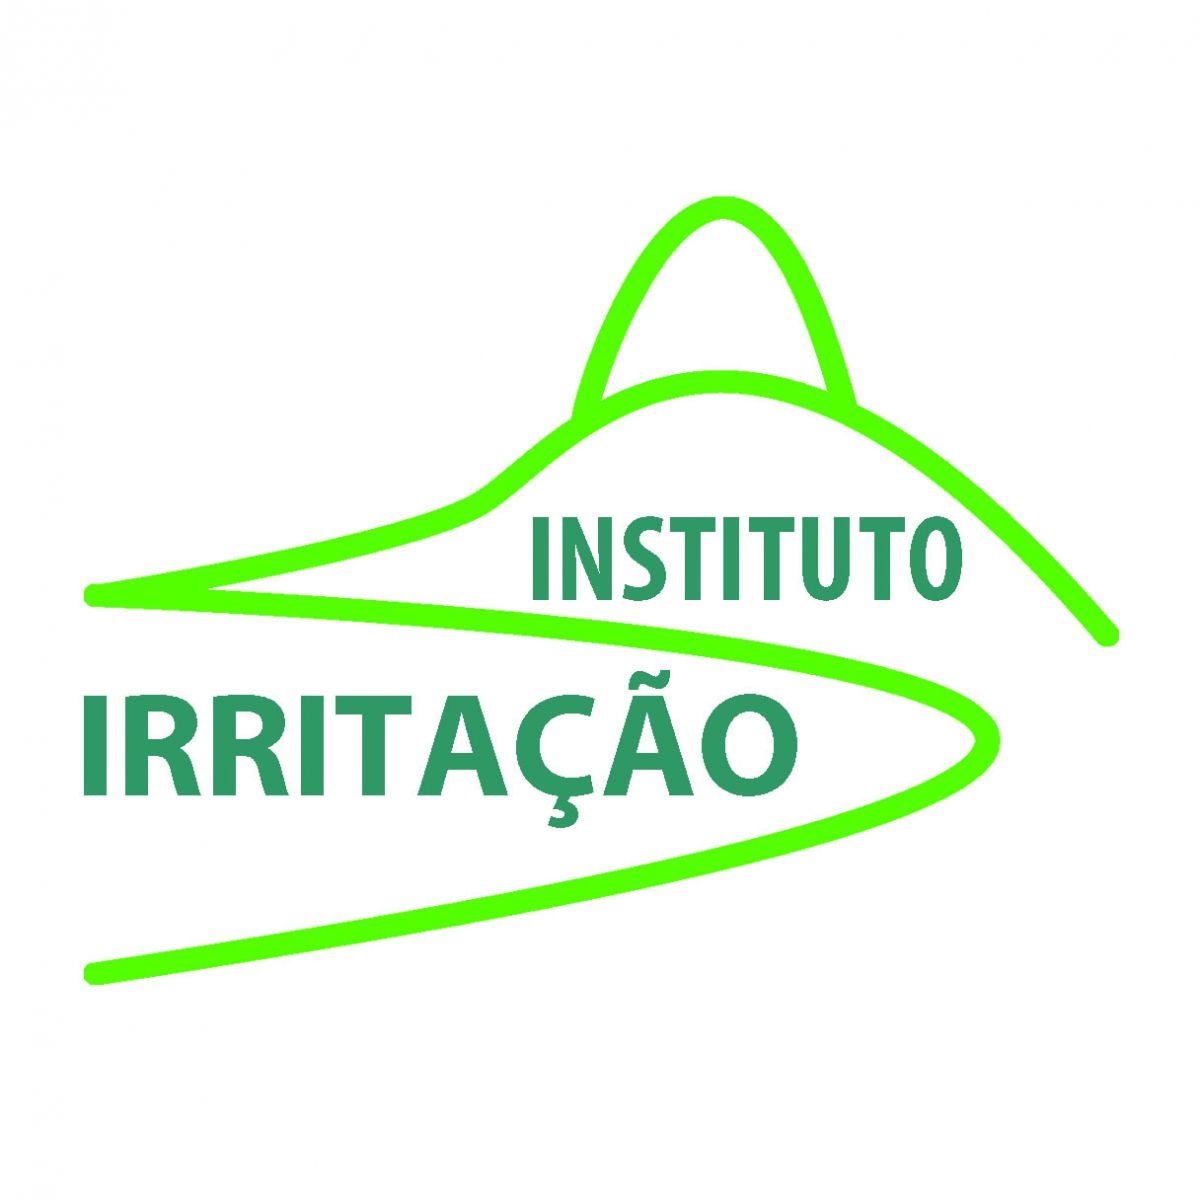 2 Instituto Irritacao